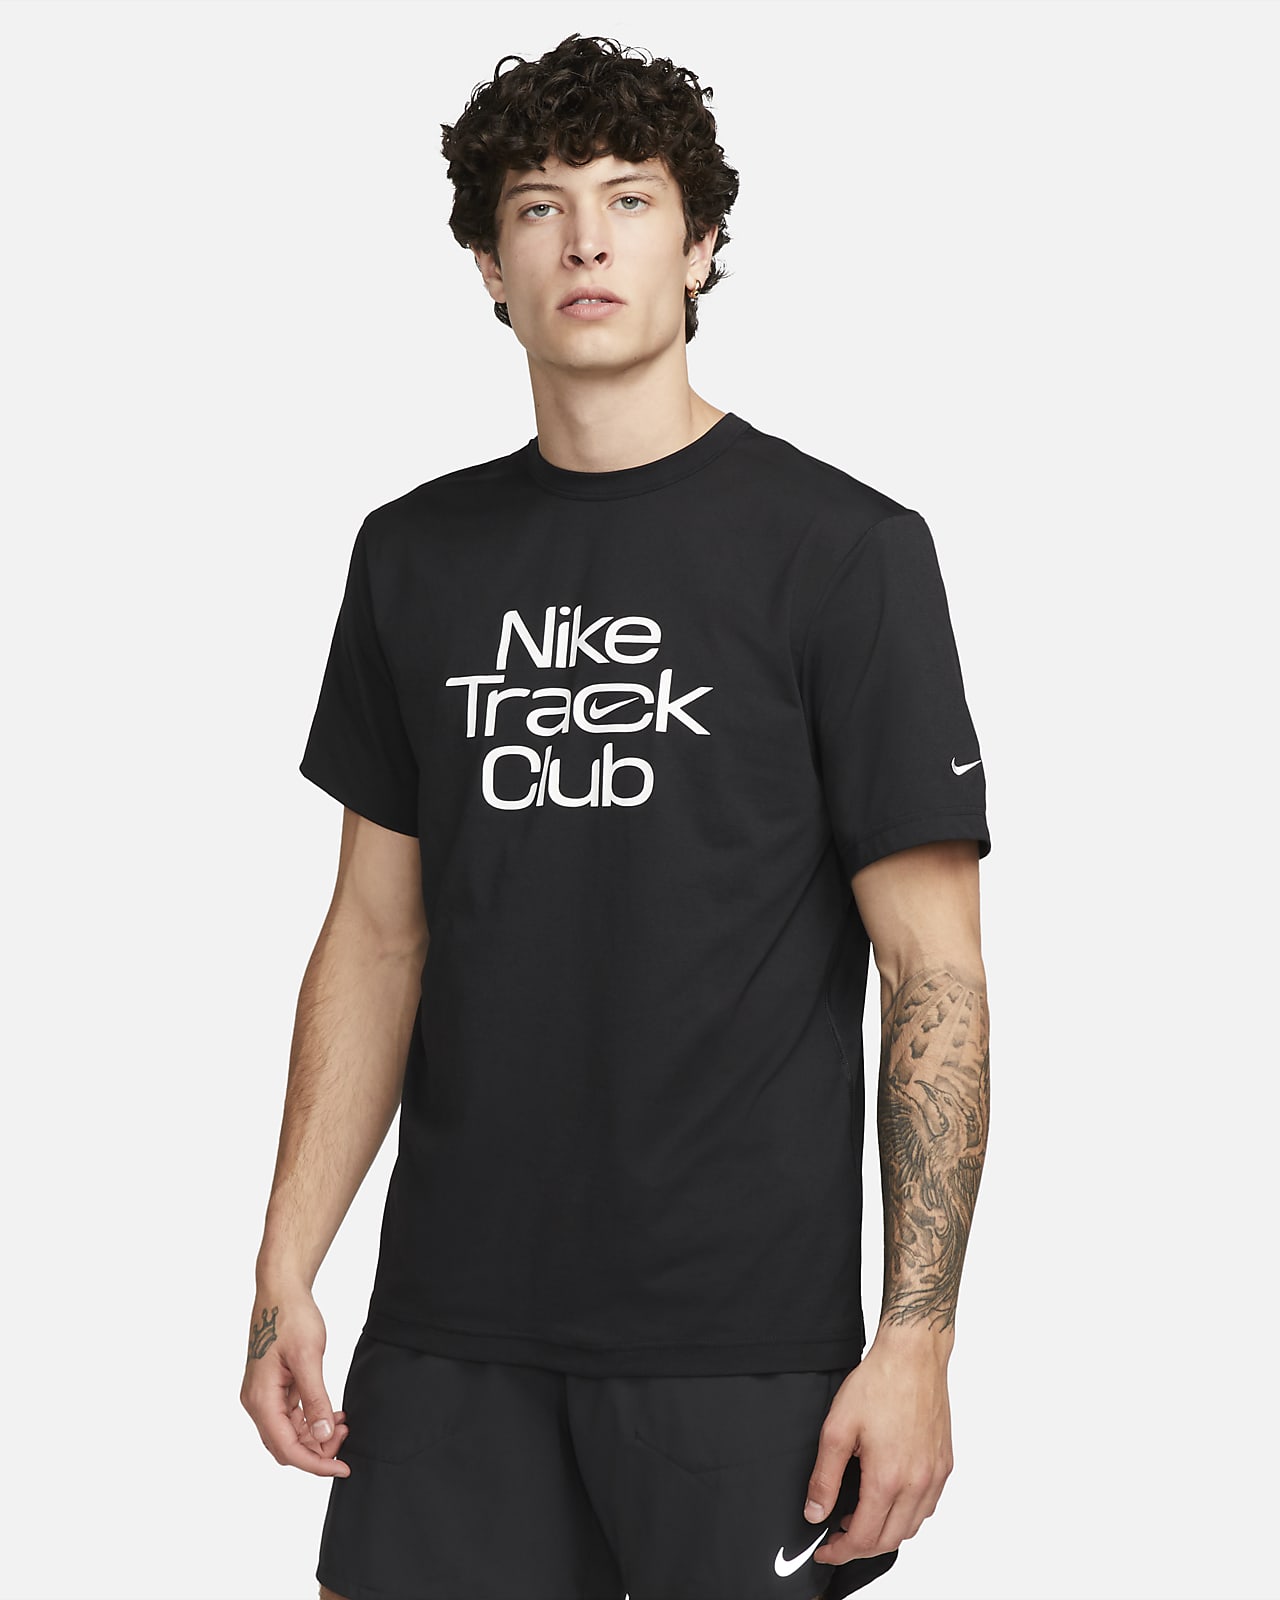 Ανδρική κοντομάνικη μπλούζα για τρέξιμο Dri-FIT Nike Track Club